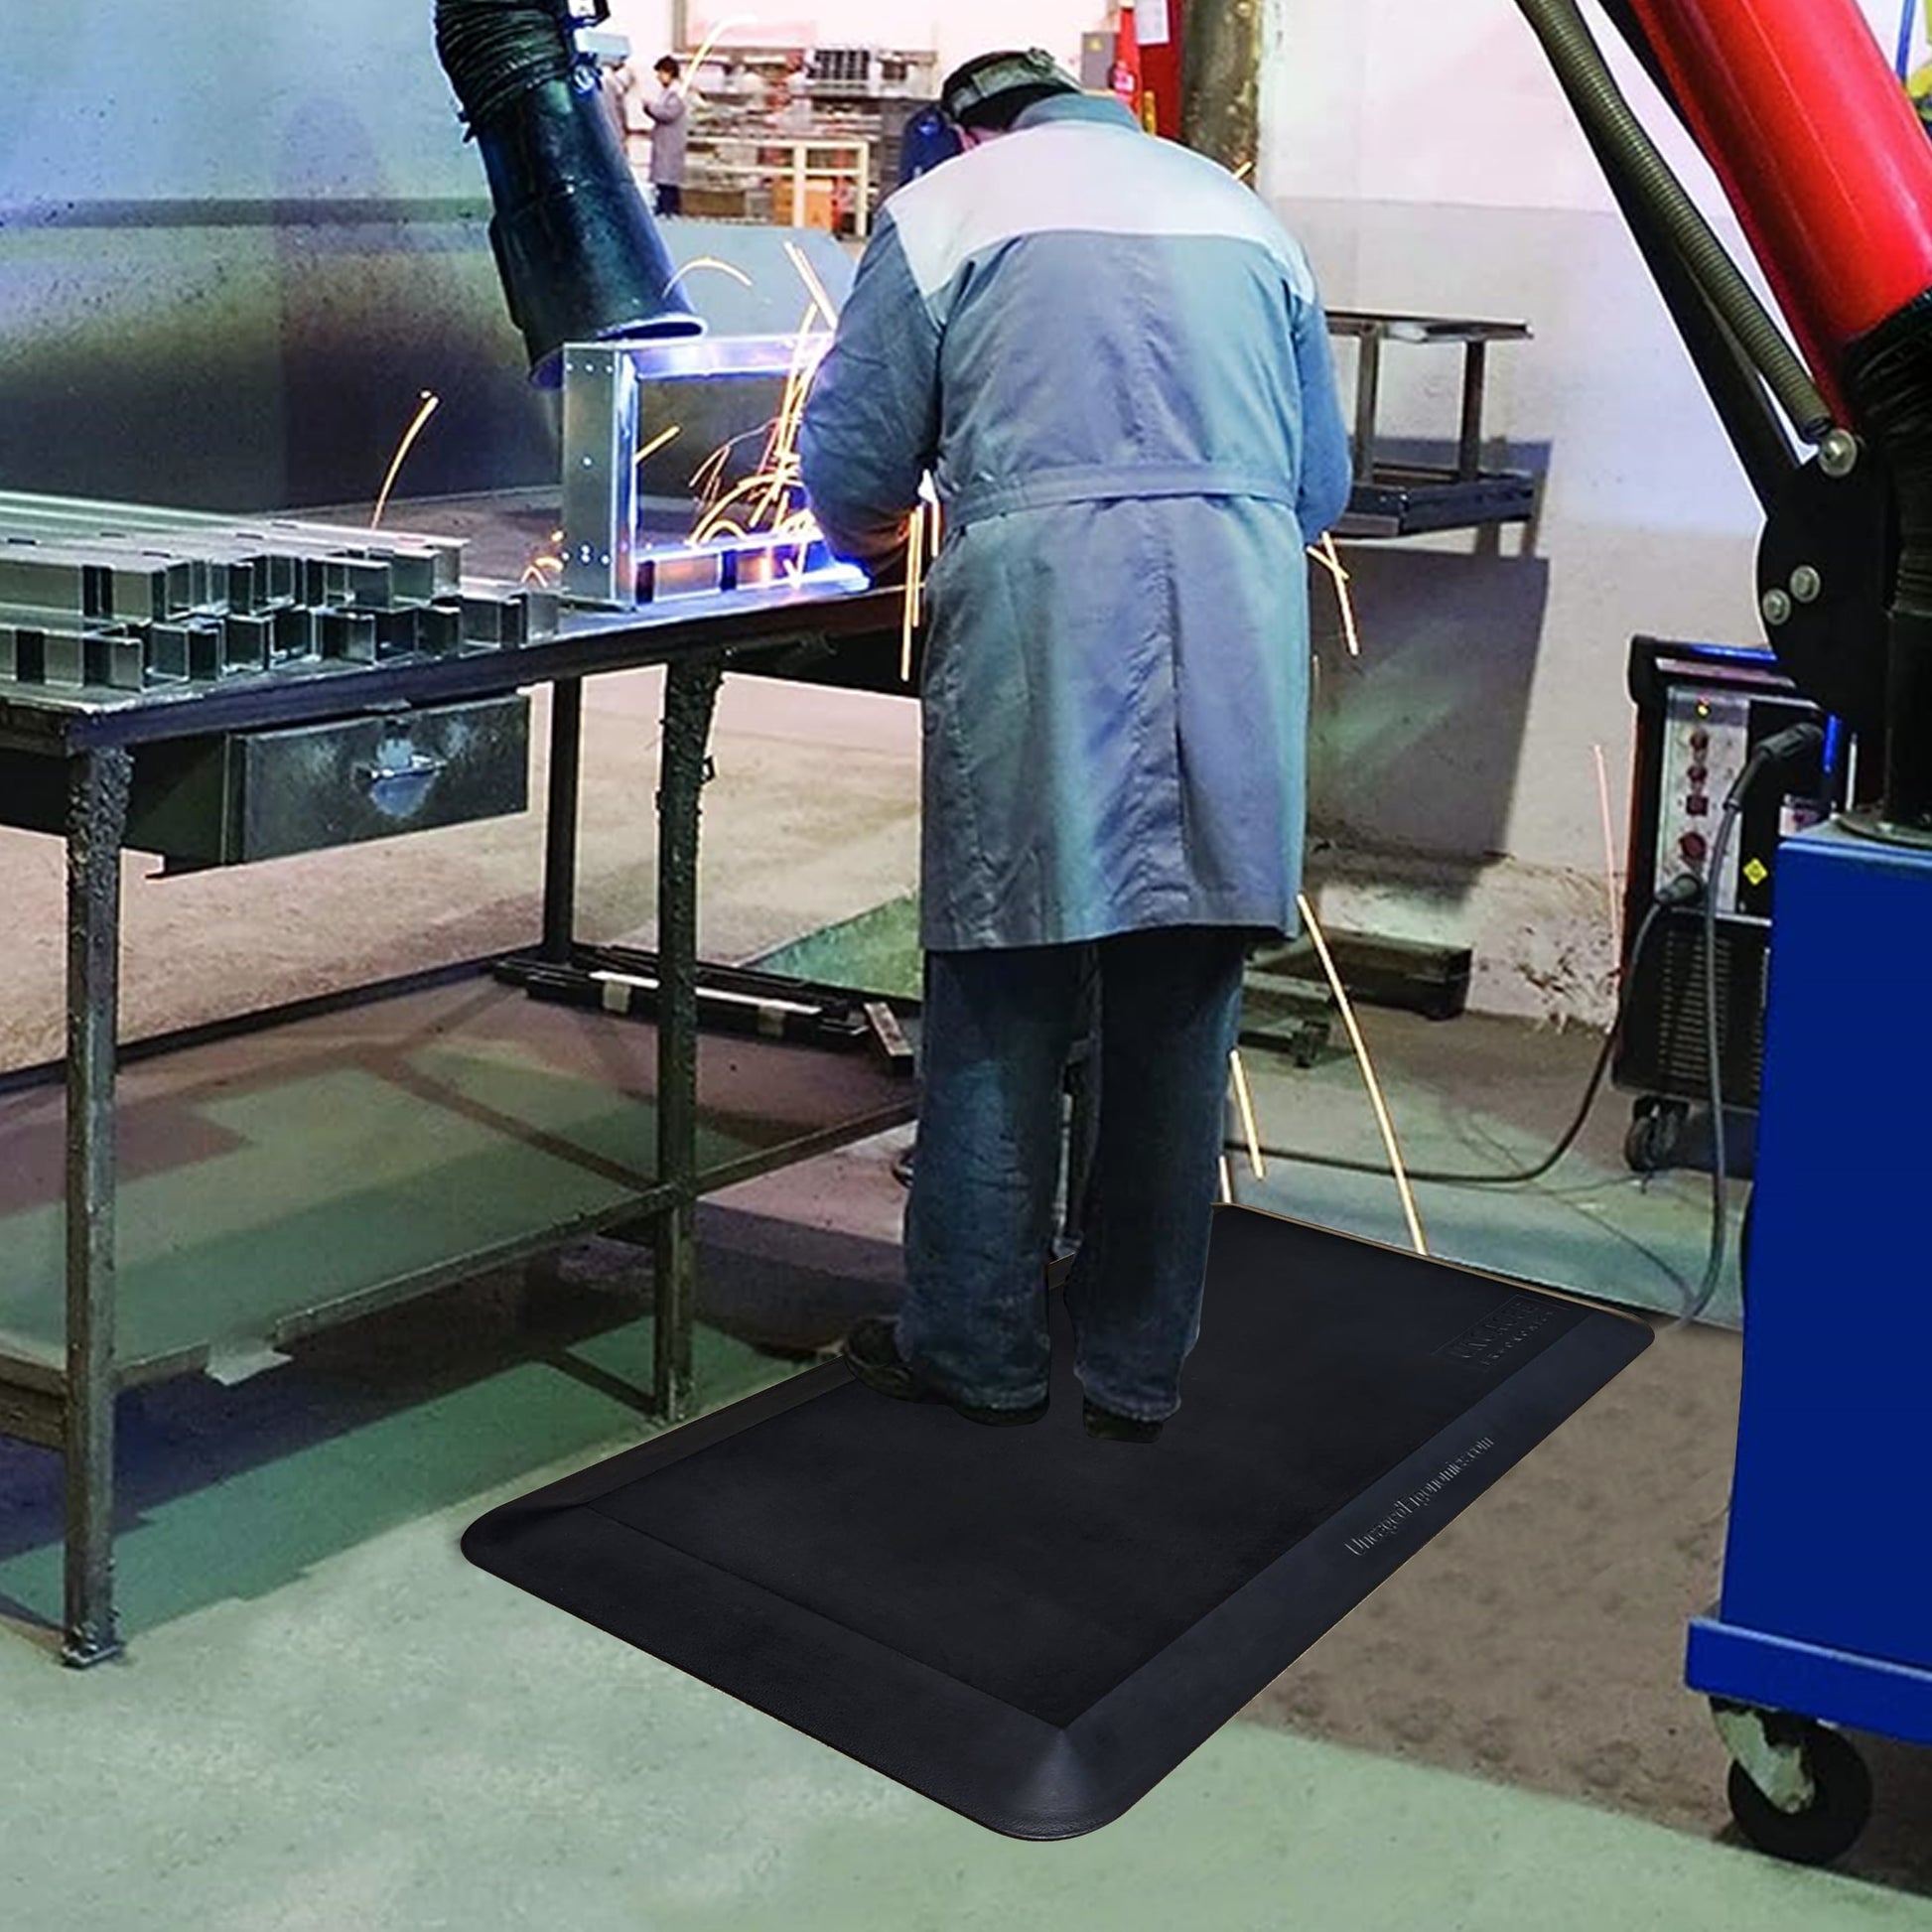 20x34” Anti-fatigue Mat comfort mat for standing desks industrial